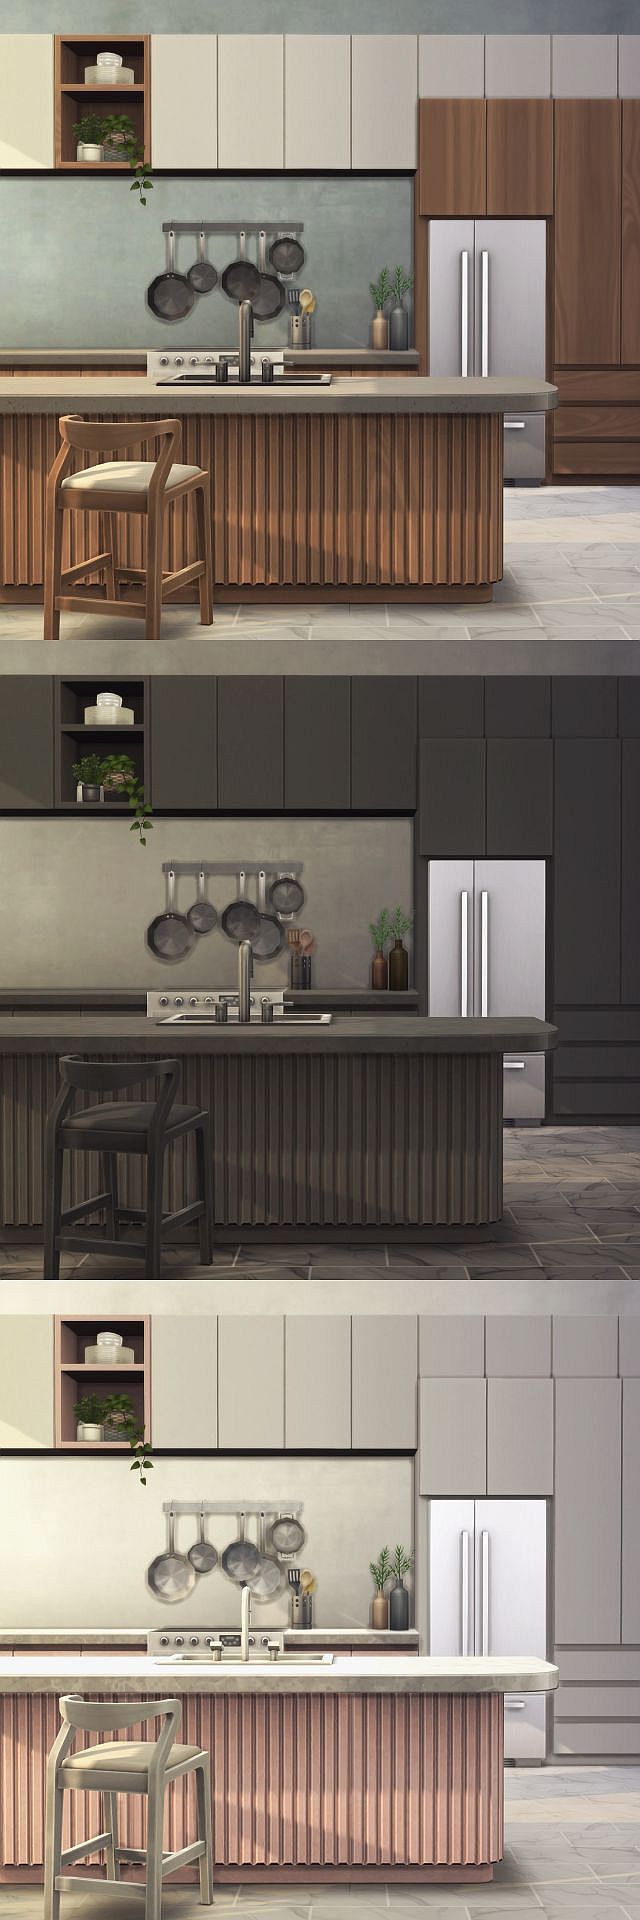 Sims 2 мебель для кухни